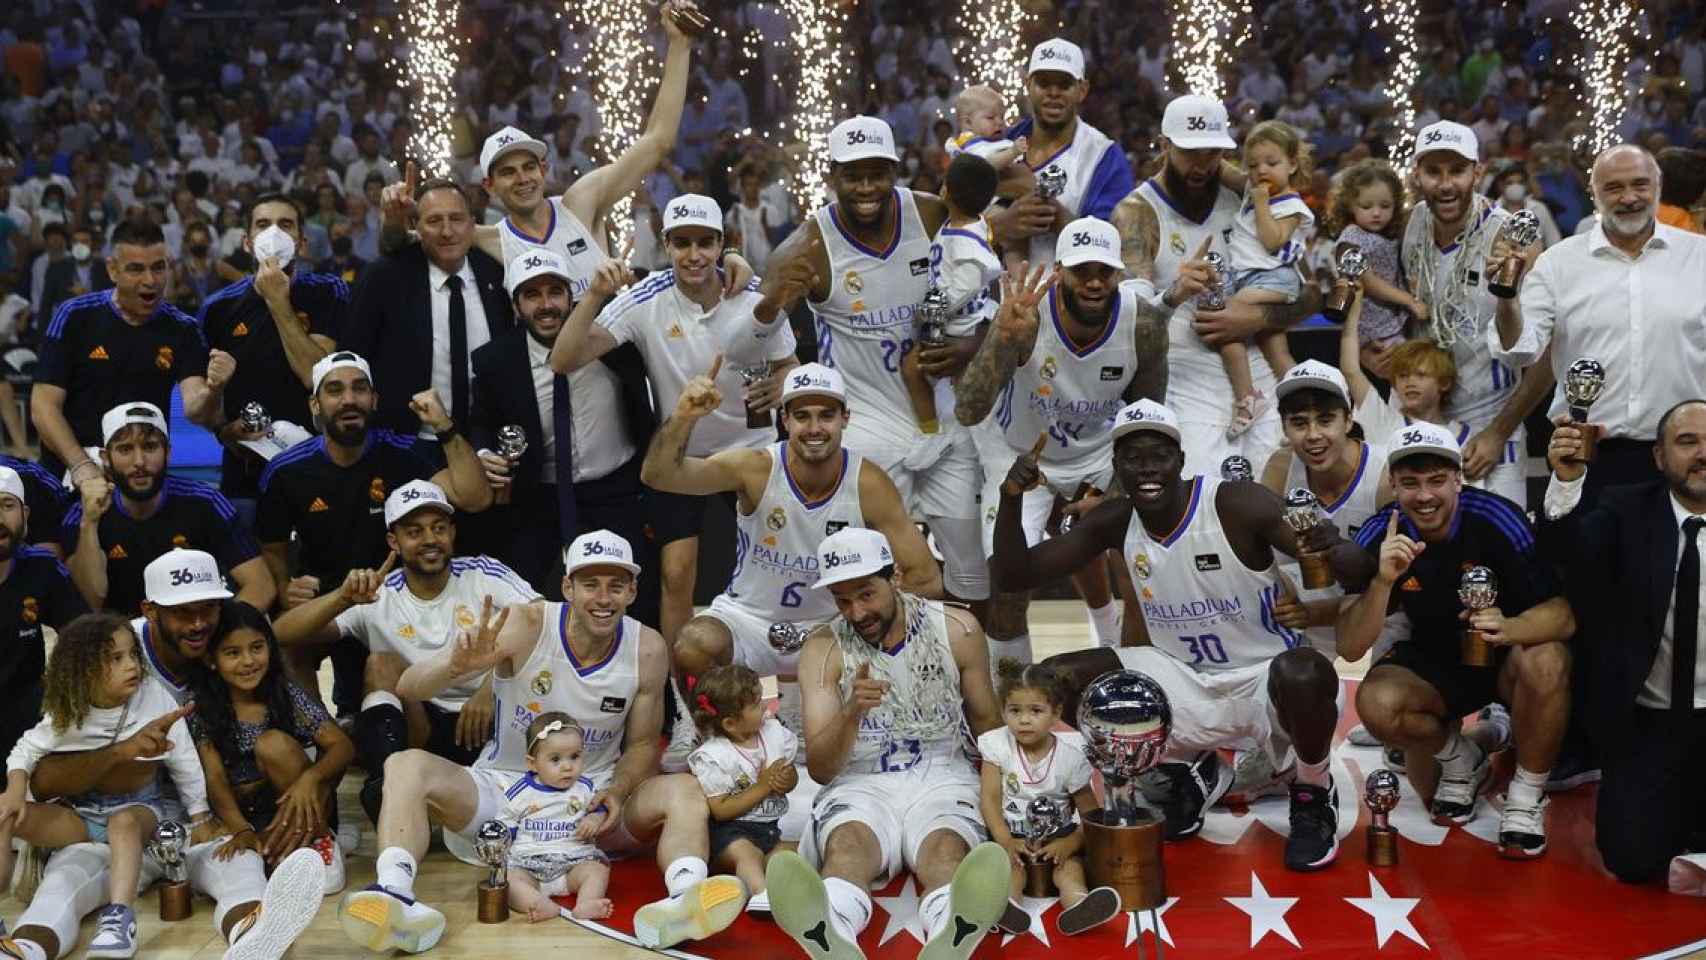 El Real Madrid de basket, celebrando el título de la Liga Endesa, tras ganar la final contra el Barça / EFE